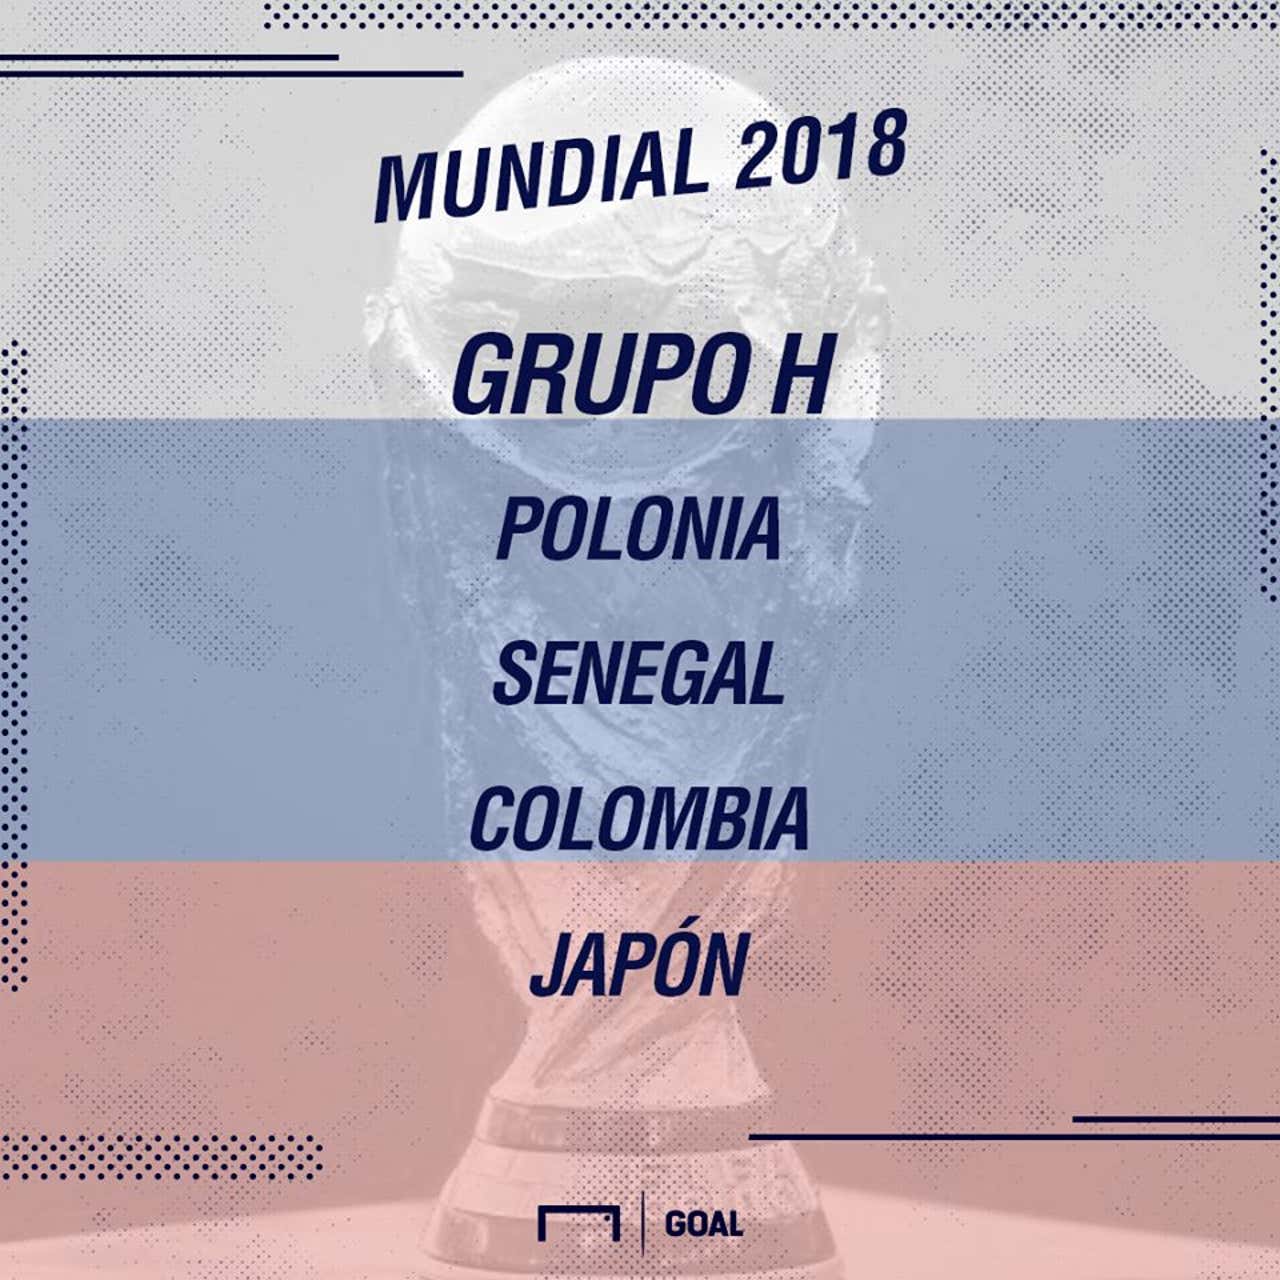 Partidos, horarios y días de Colombia en el Mundial Rusia 2018: Polonia, Senegal y Japón, del Grupo | Goal.com Chile